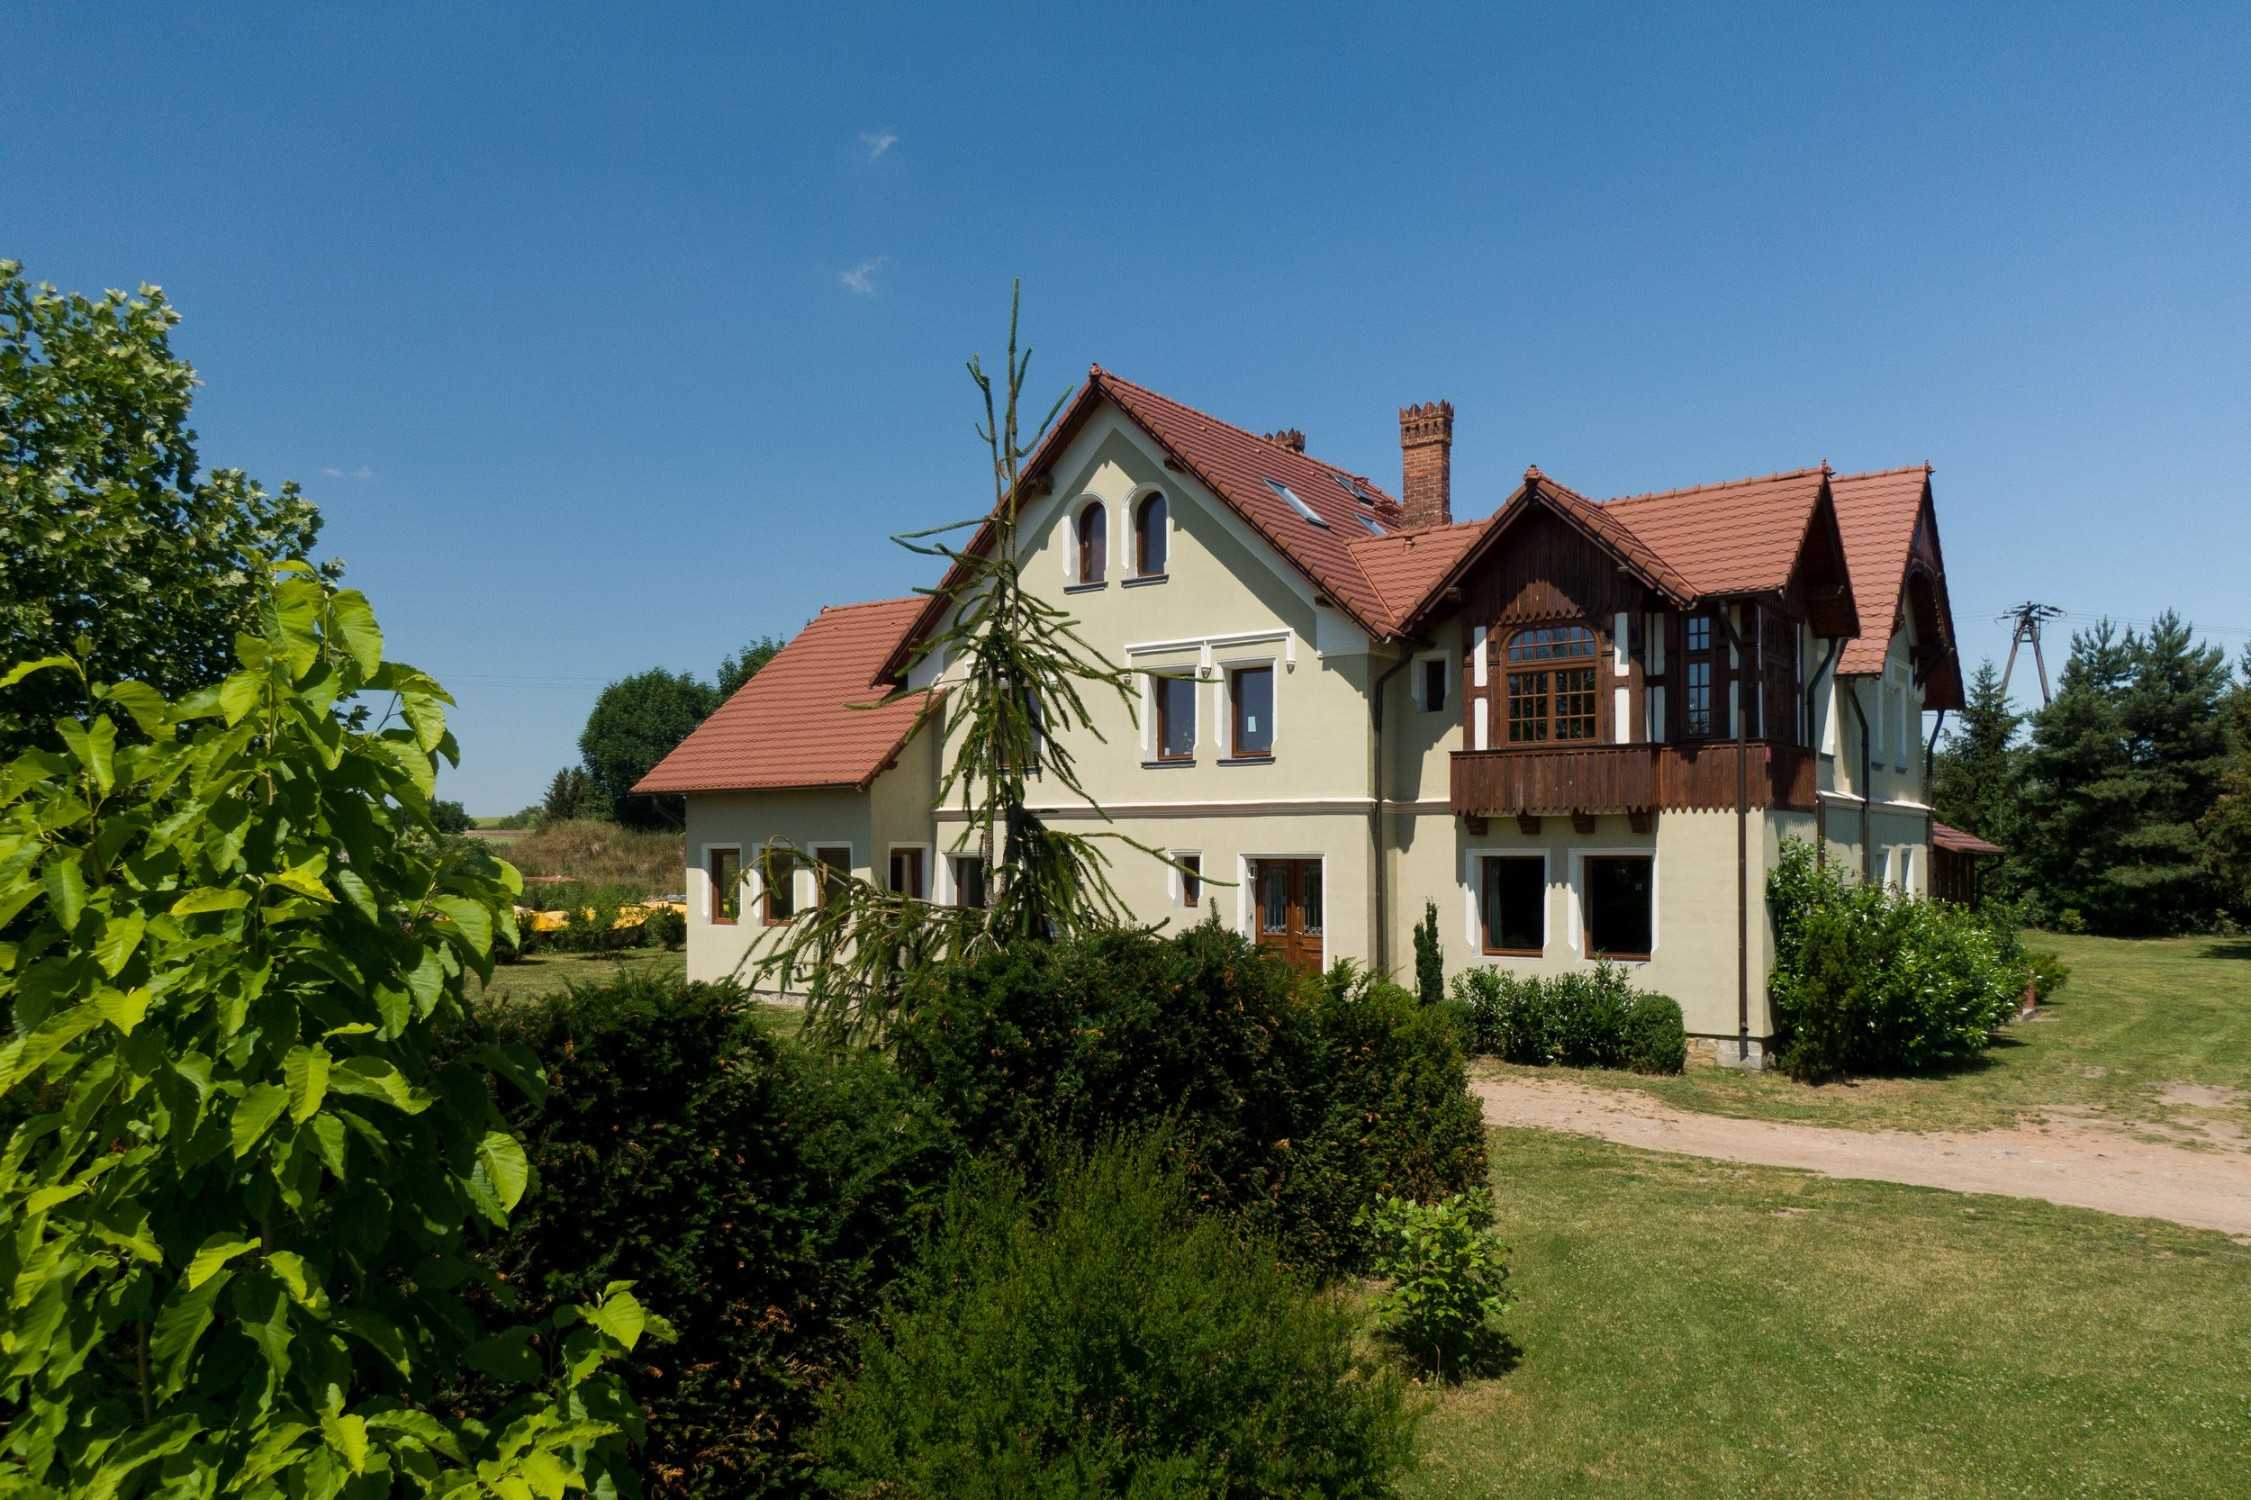 Fotos Historische Villa in Niederschlesien Nähe Breslau